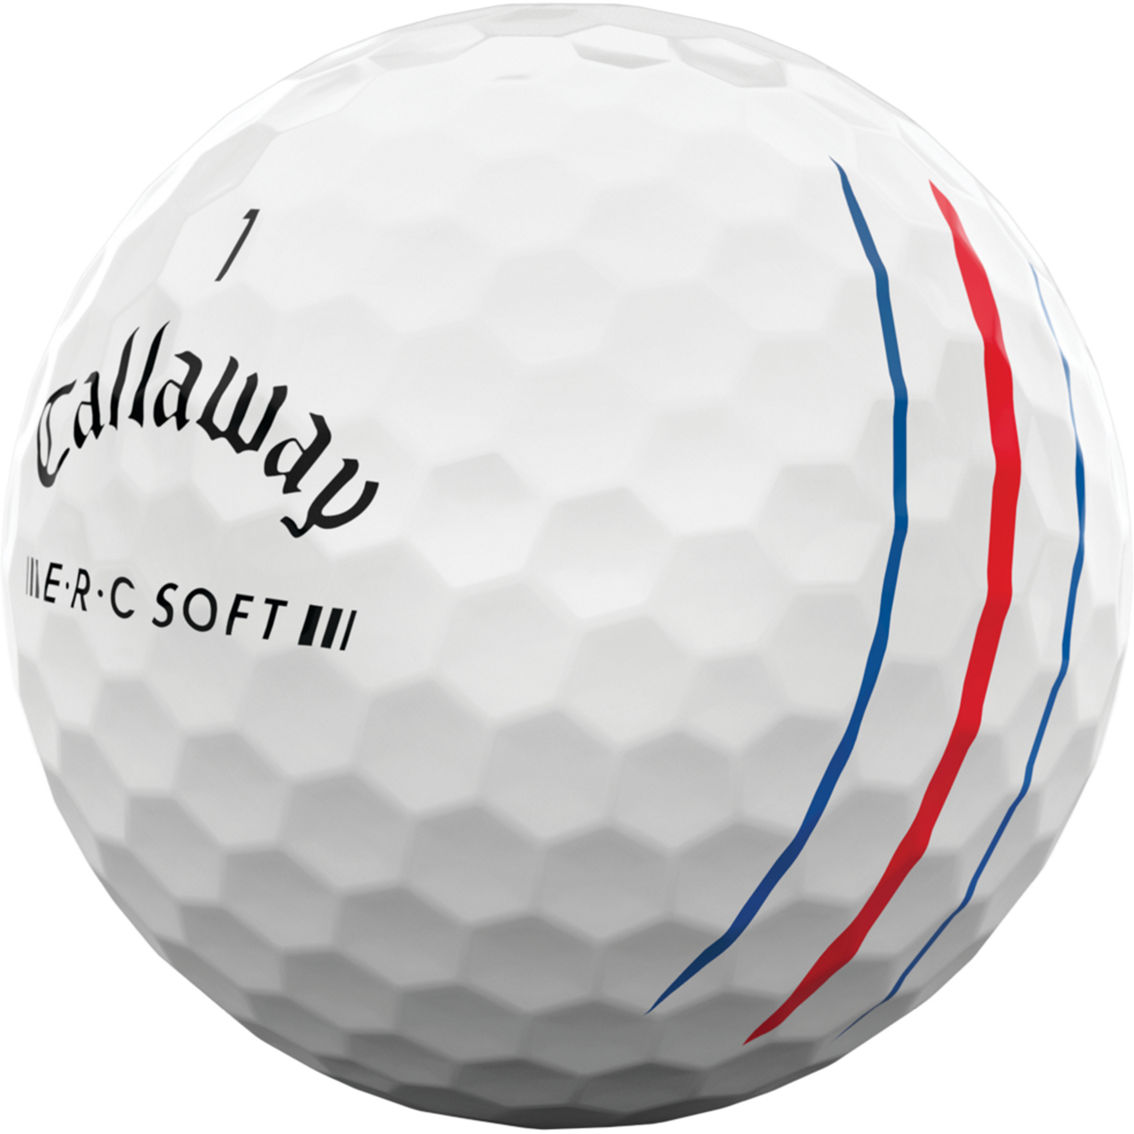 Callaway ERC Soft Golf Balls - Image 2 of 2